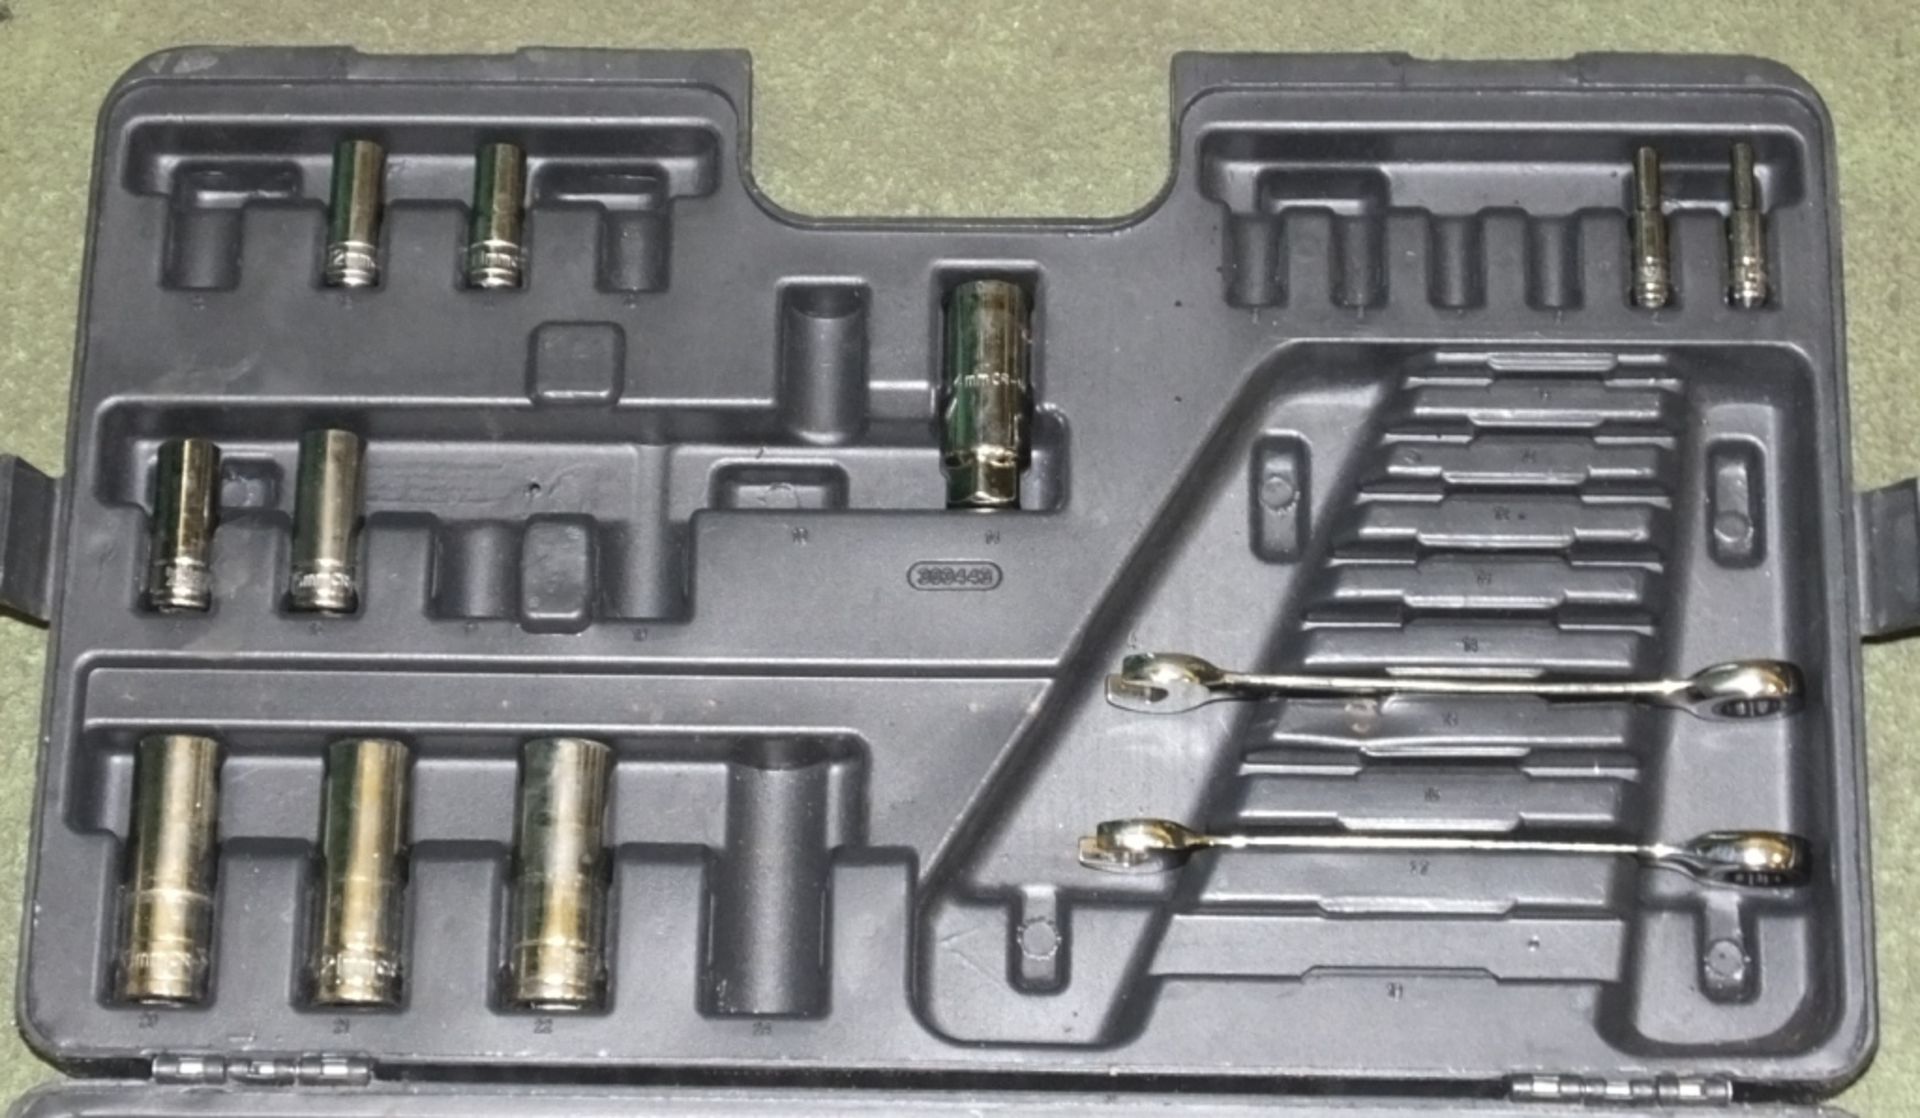 Halfords - Ratchet & Socket set in carry case - incomplete - Image 2 of 3